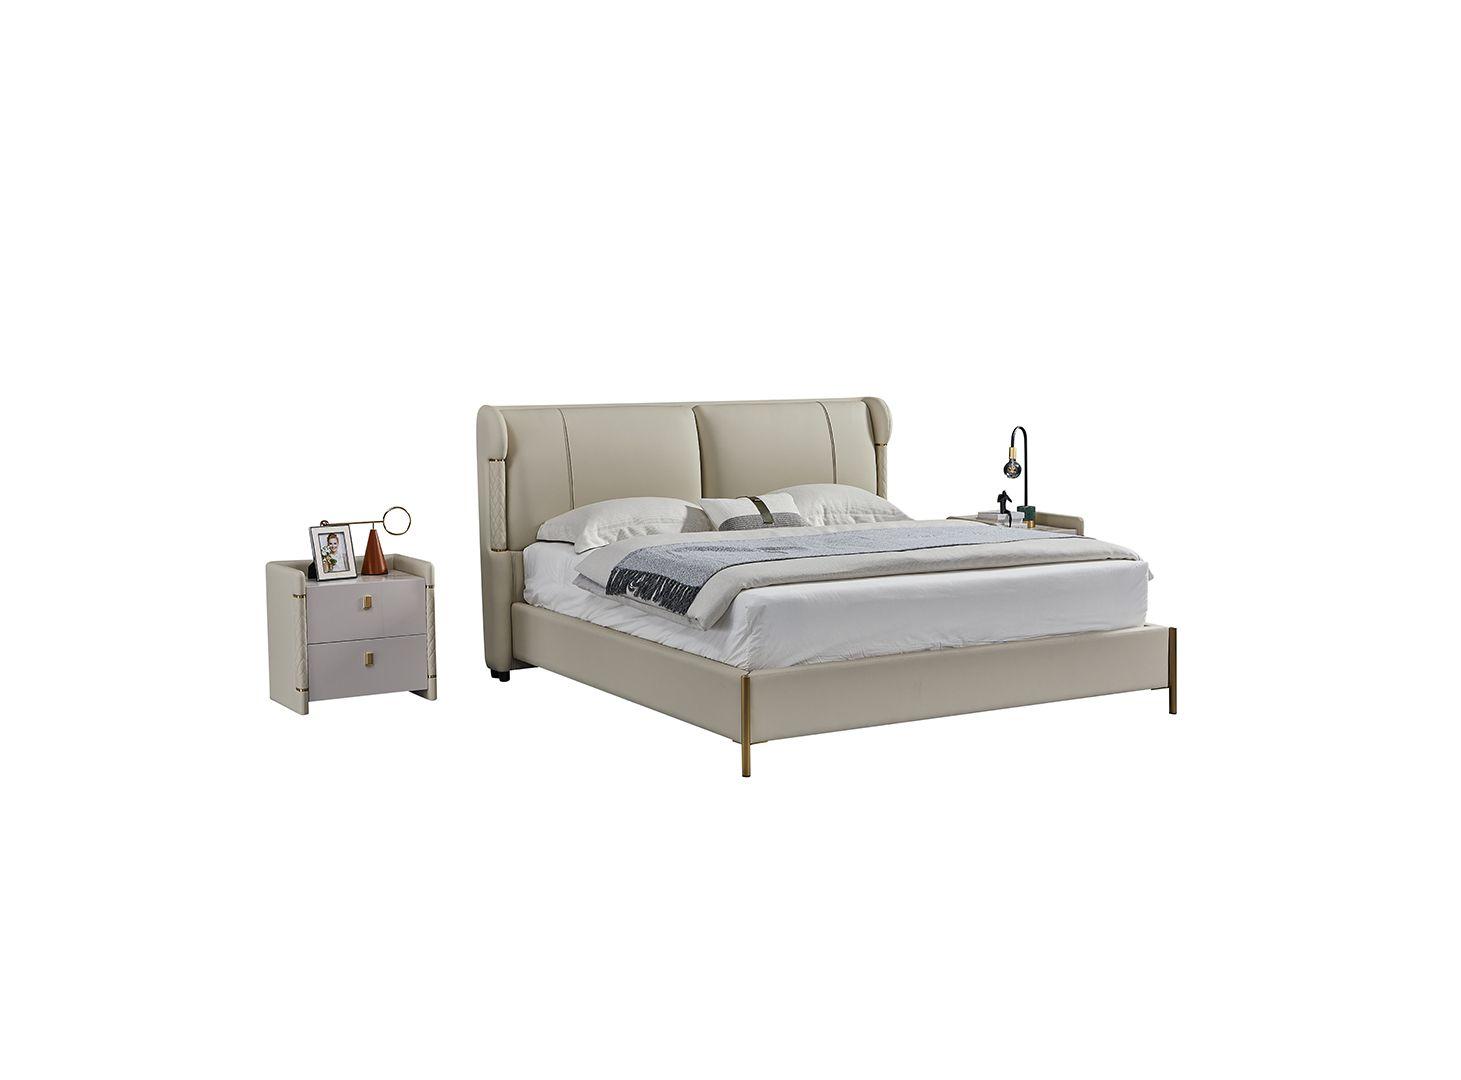 Contemporary, Modern Platform Bedroom Set B-Y2007-EK / NS-Y2007 B-Y2007-EK-3PC in Gray Genuine Leather